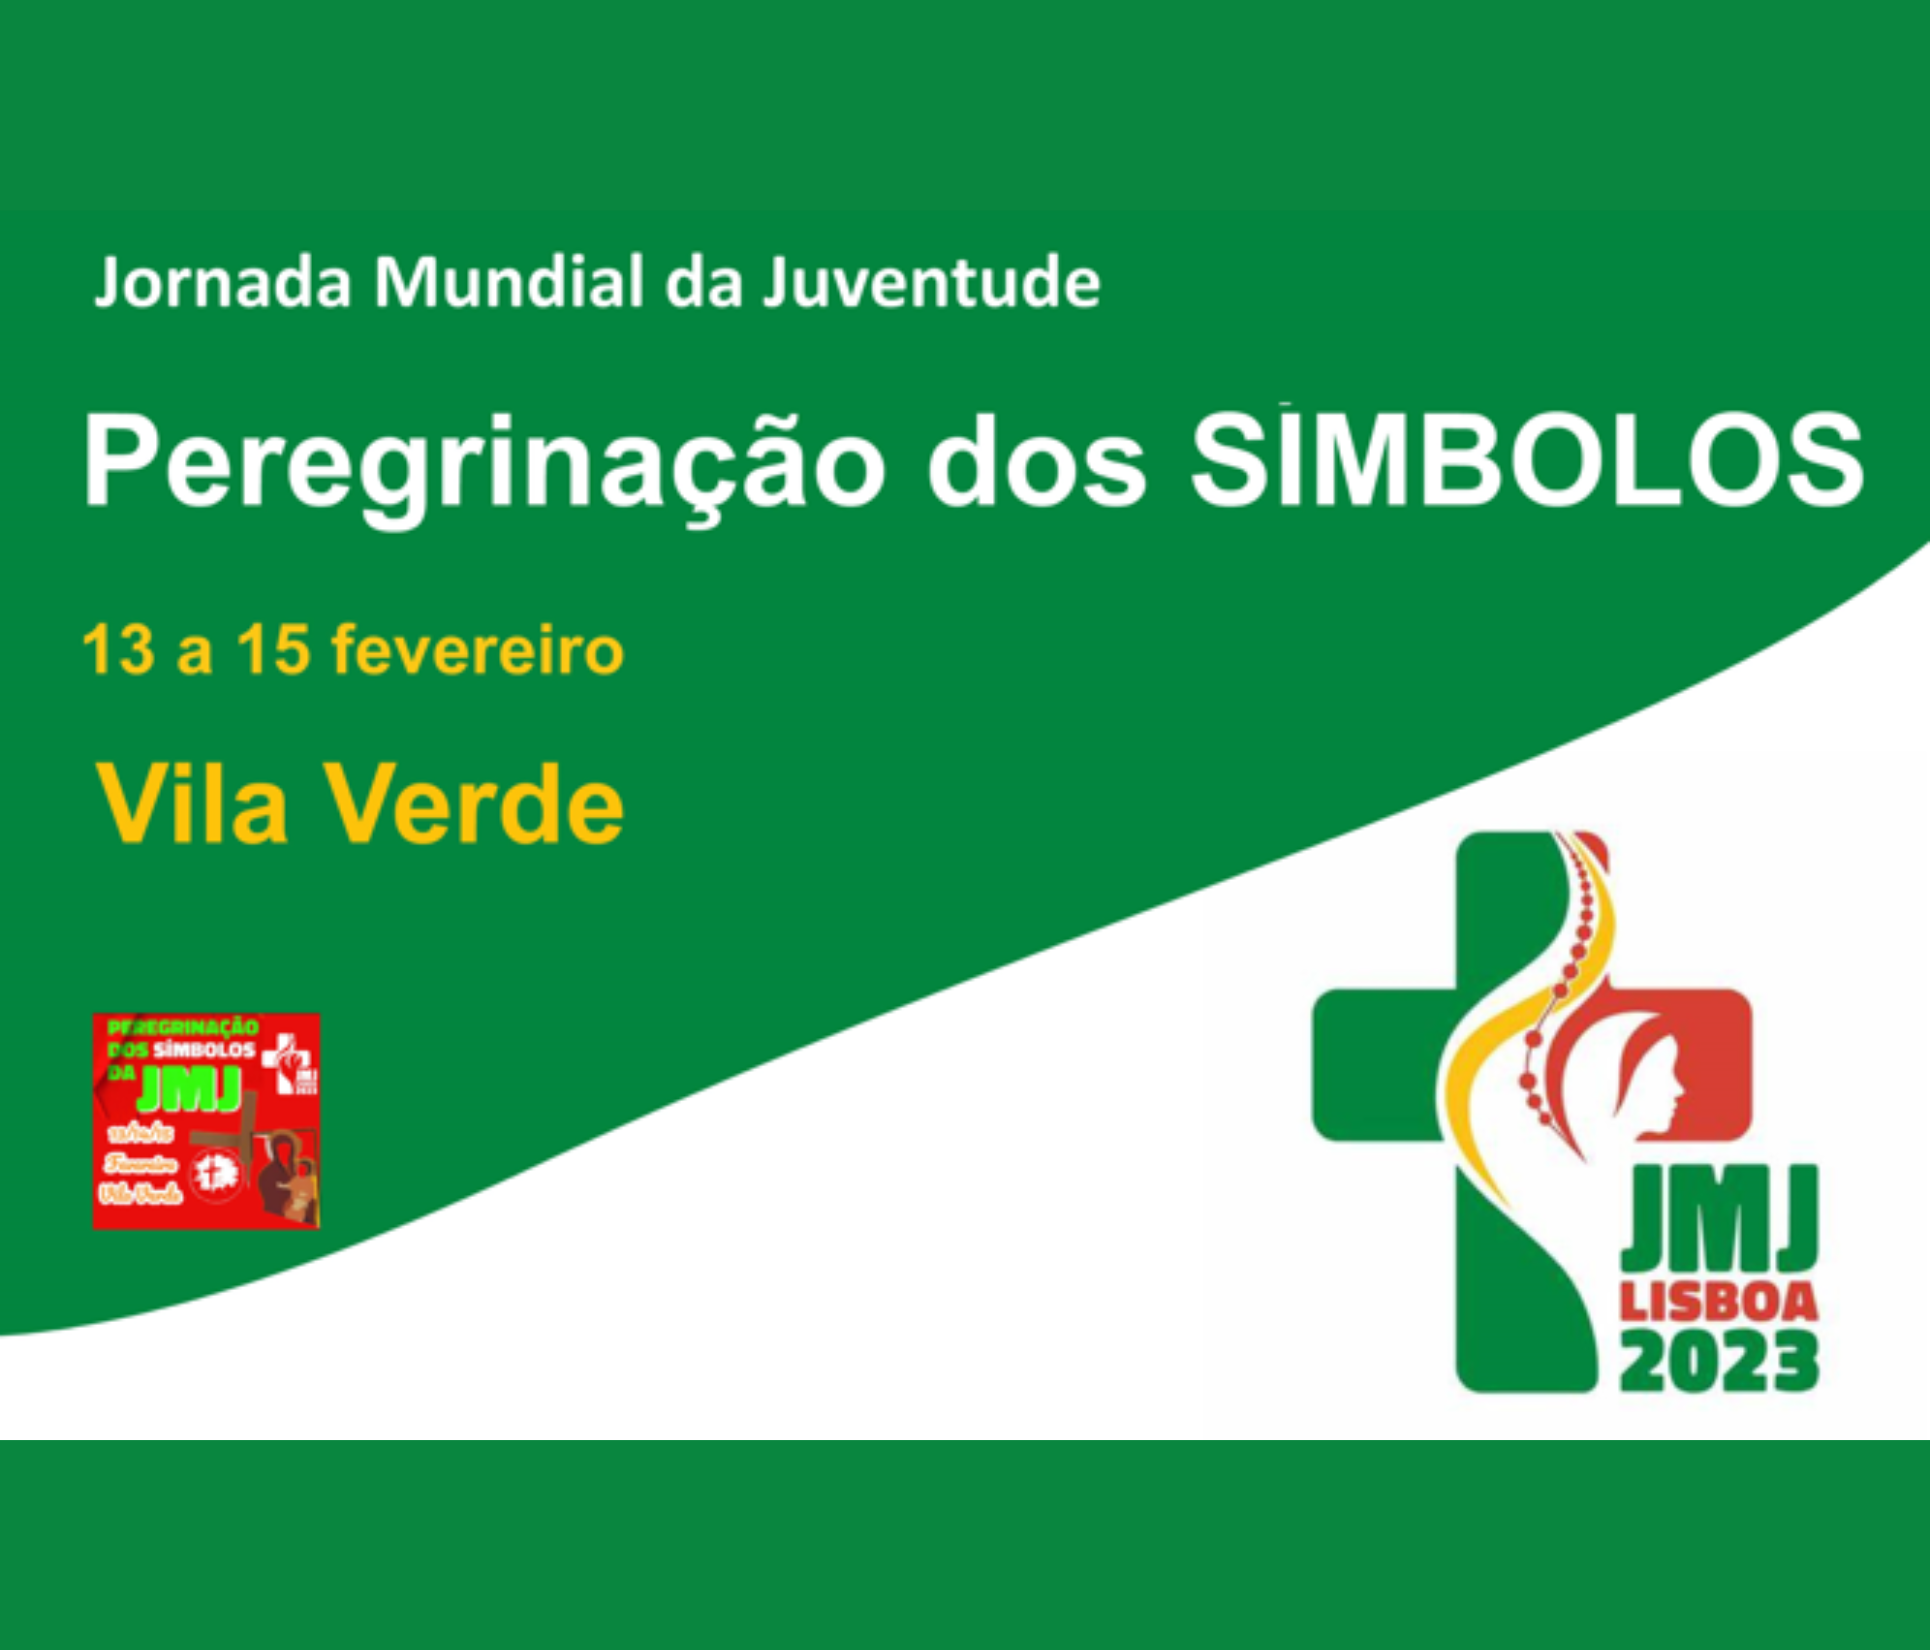 Jornada Mundial da Juventude – Concelho de Vila Verde acolhe de 13 a 15 de fevereiro peregrinação dos Símbolos da JMJ